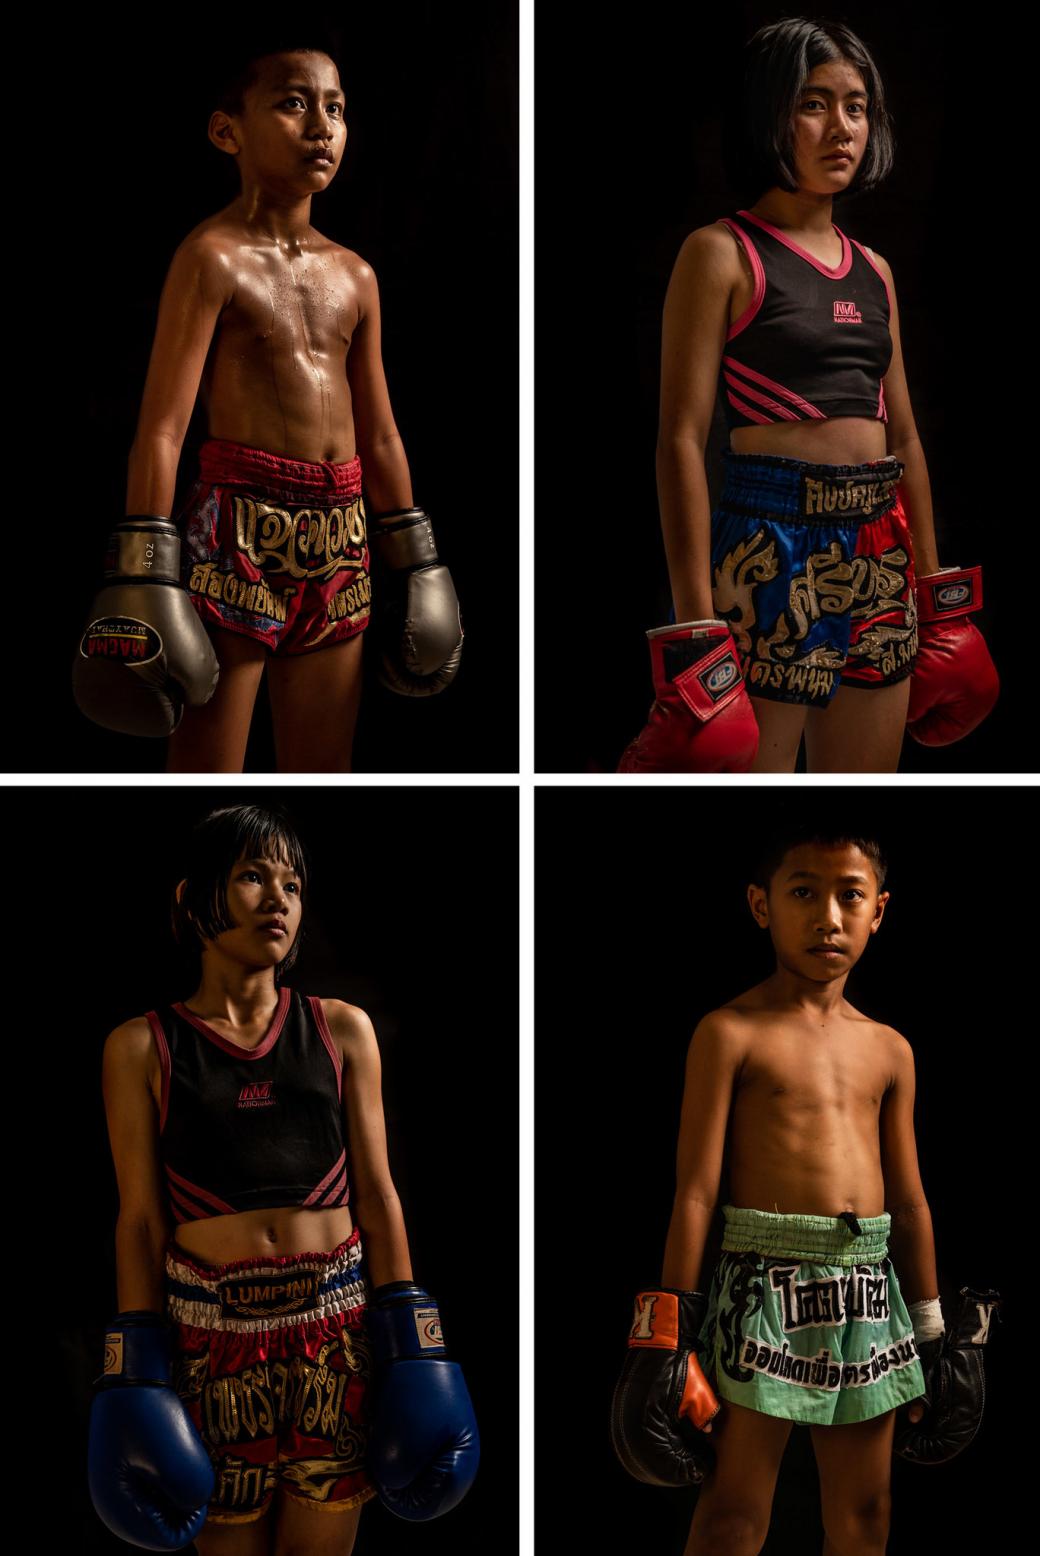 Chân dung bốn võ sĩ nhí tại một sàn đấu ở Bangkok, theo thứ tự chiều kim đồng hồ gồm: Chaichana Saengngern, 10 tuổi; Kaemanee Chanthawong, 15 tuổi; Nathawut Yukut, 8 tuổi và Supattra Inthirat, 12 tuổi.